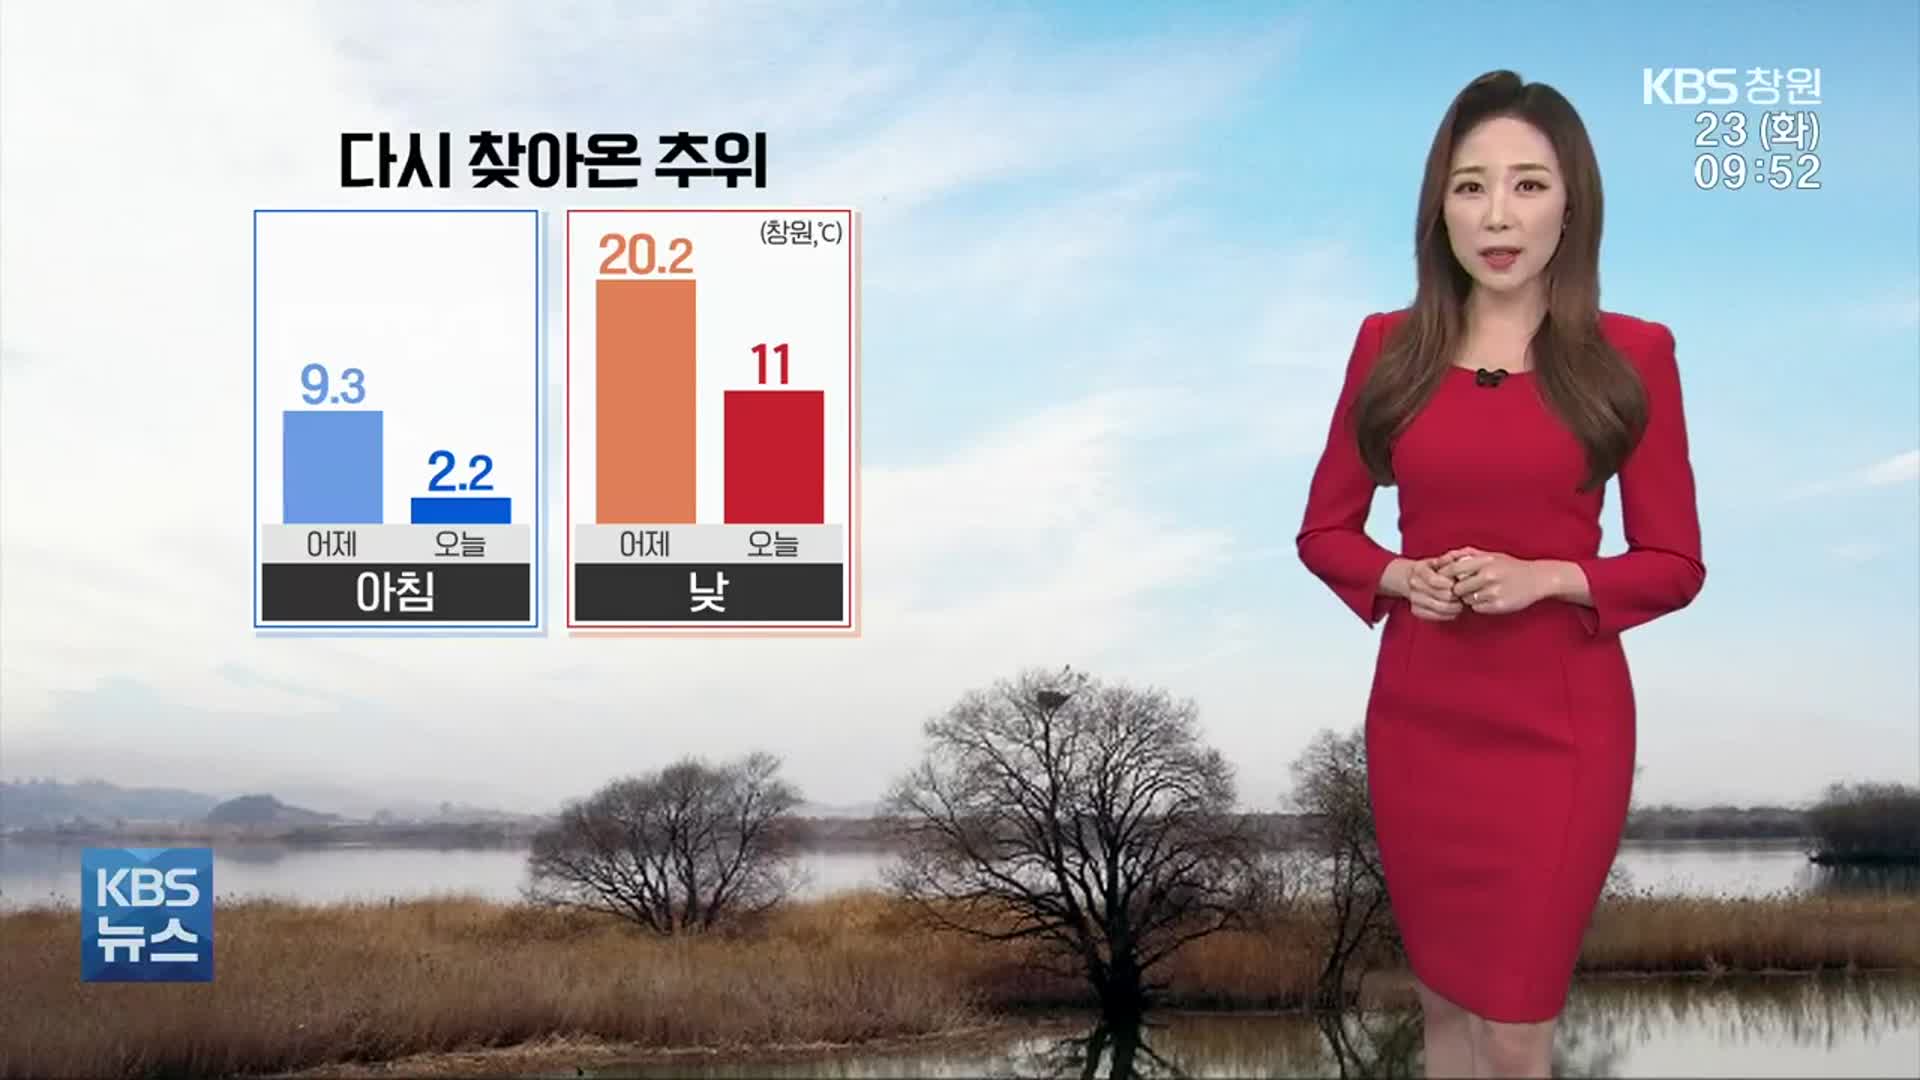 [날씨] 경남 오늘 반짝 추위…곳곳 건조주의보 발효 중